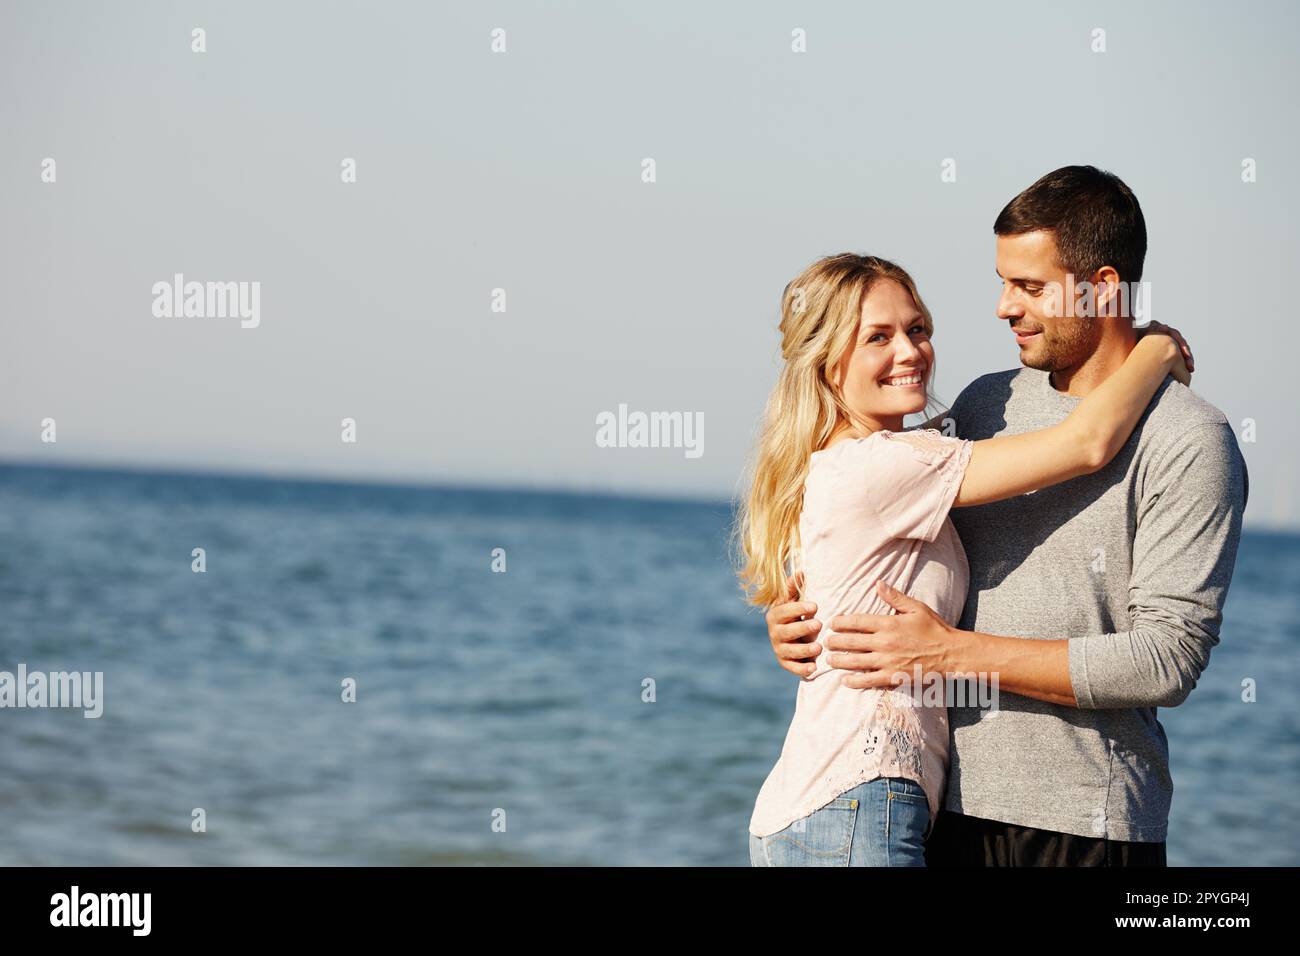 Il posto perfetto per un po' di amore. Ritratto di una giovane coppia felice che si abbraccia all'oceano. Foto Stock